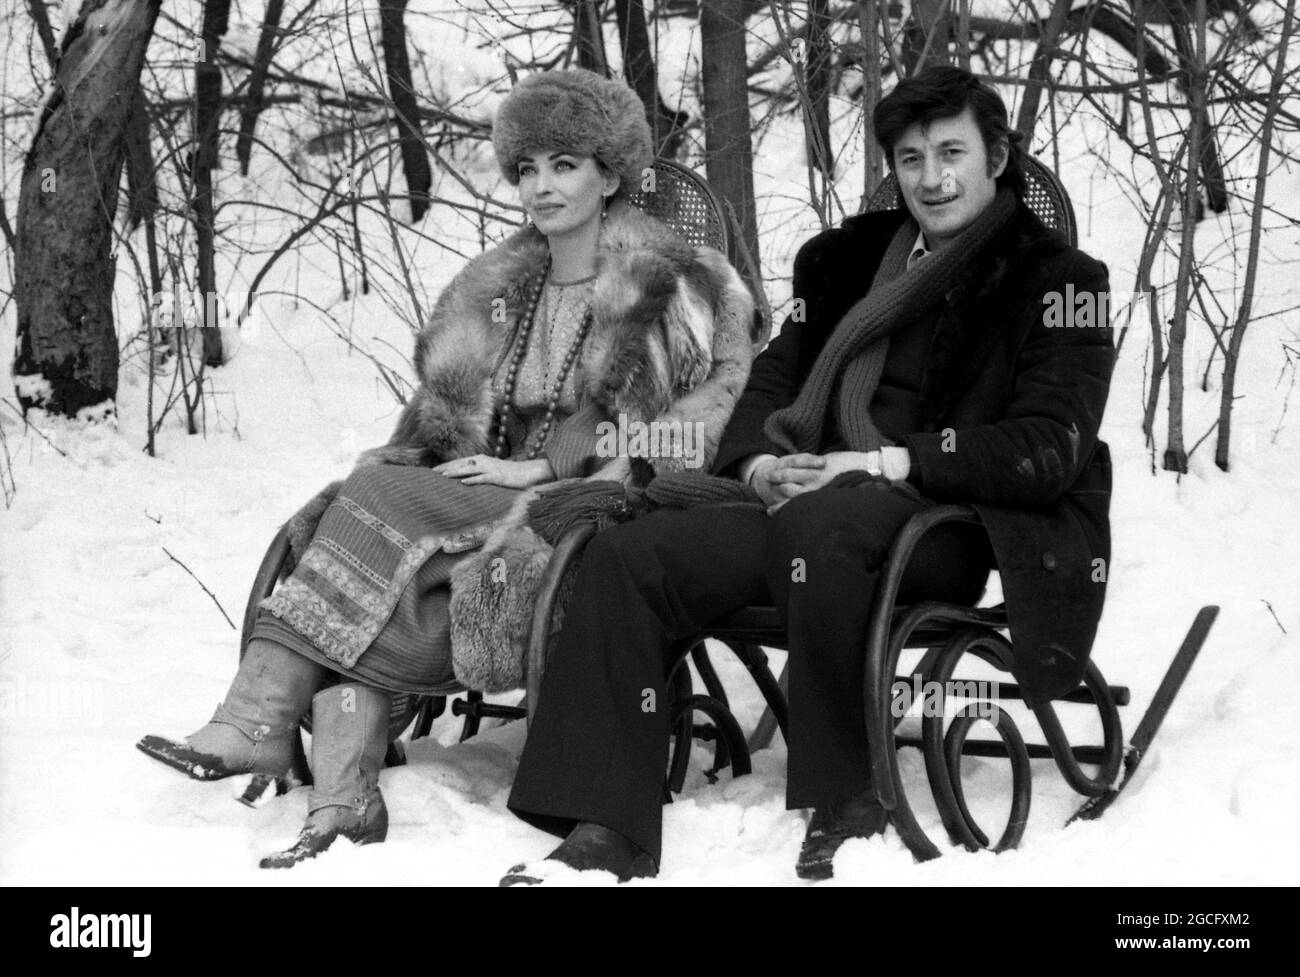 Gli attori rumeni Julieta Szönyi & Ion Caramitru, 1980 Foto Stock